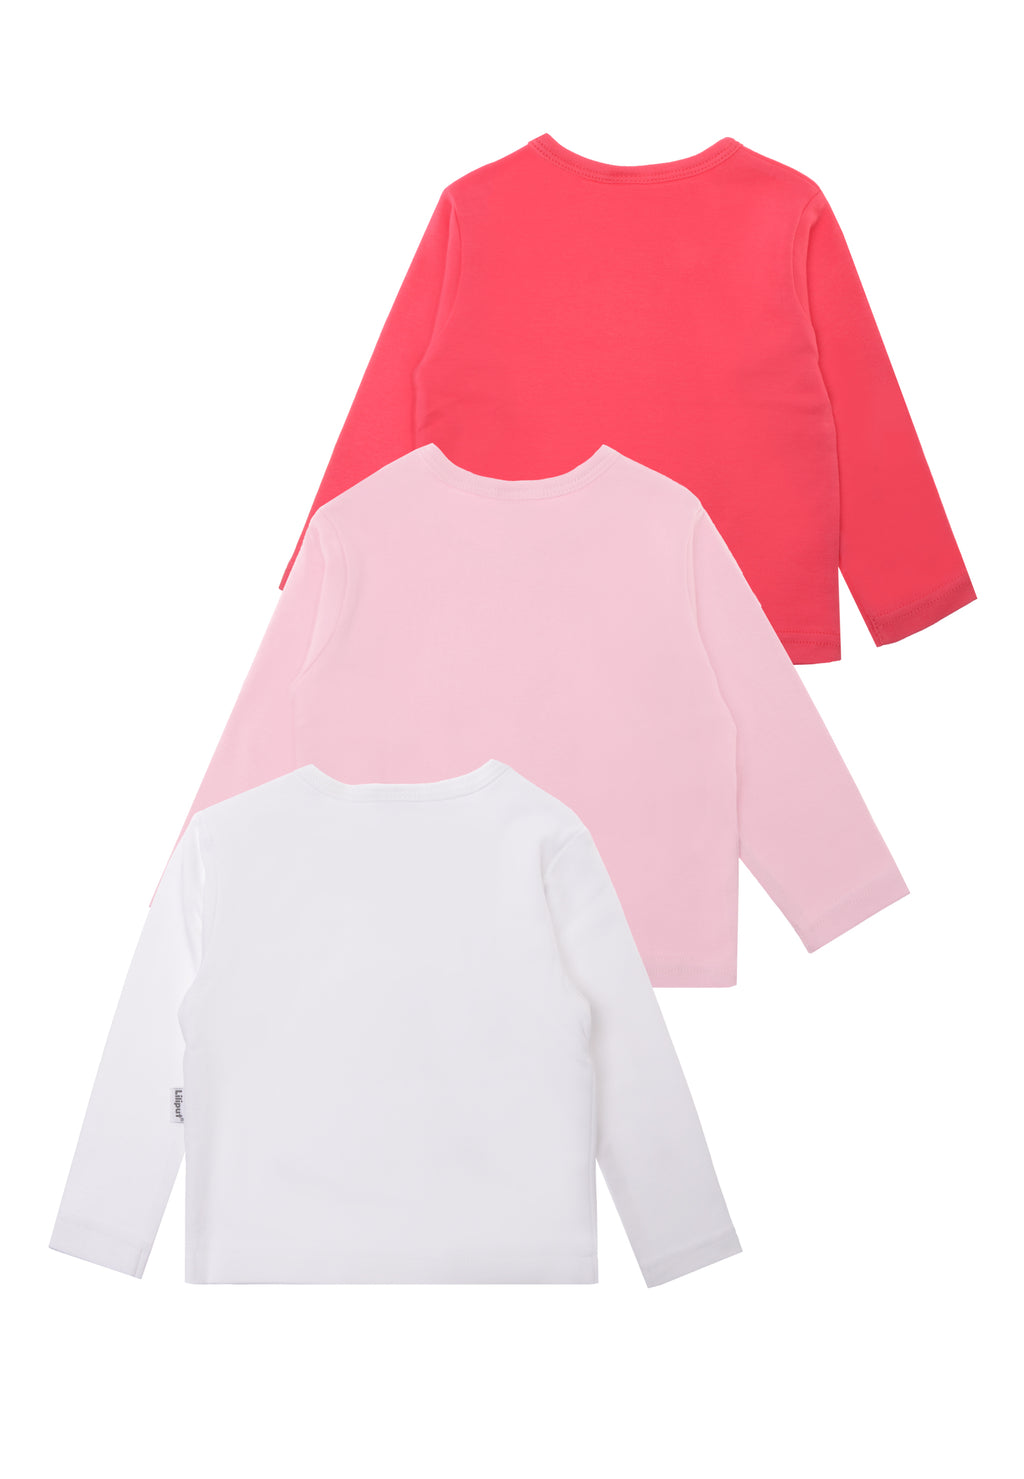 3er Pack Langarmshirts in himbeer, rosa und weiß aus Bio Baumwolle.